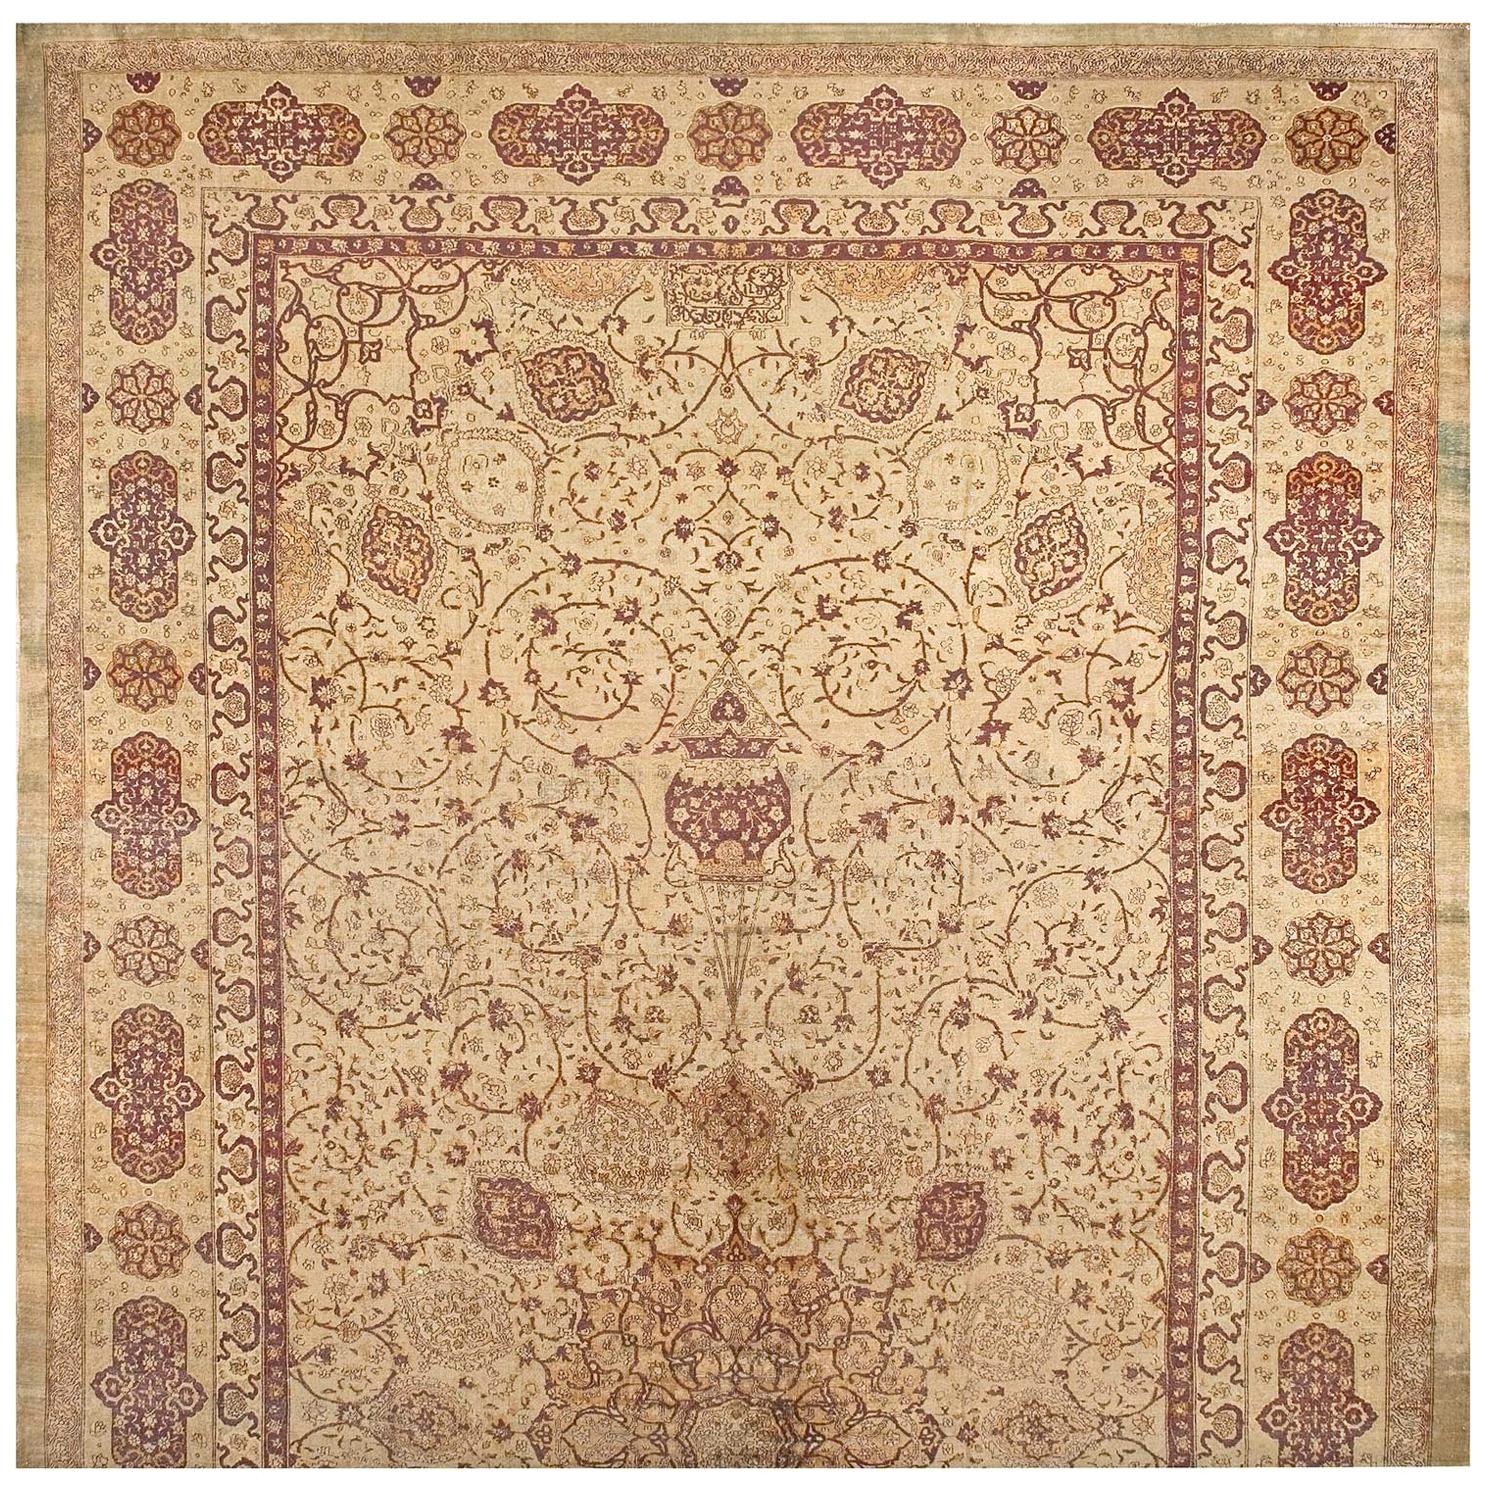 N. Amritsar-Teppich aus dem frühen 20. Jahrhundert (14 x 27' - 427 x 823)